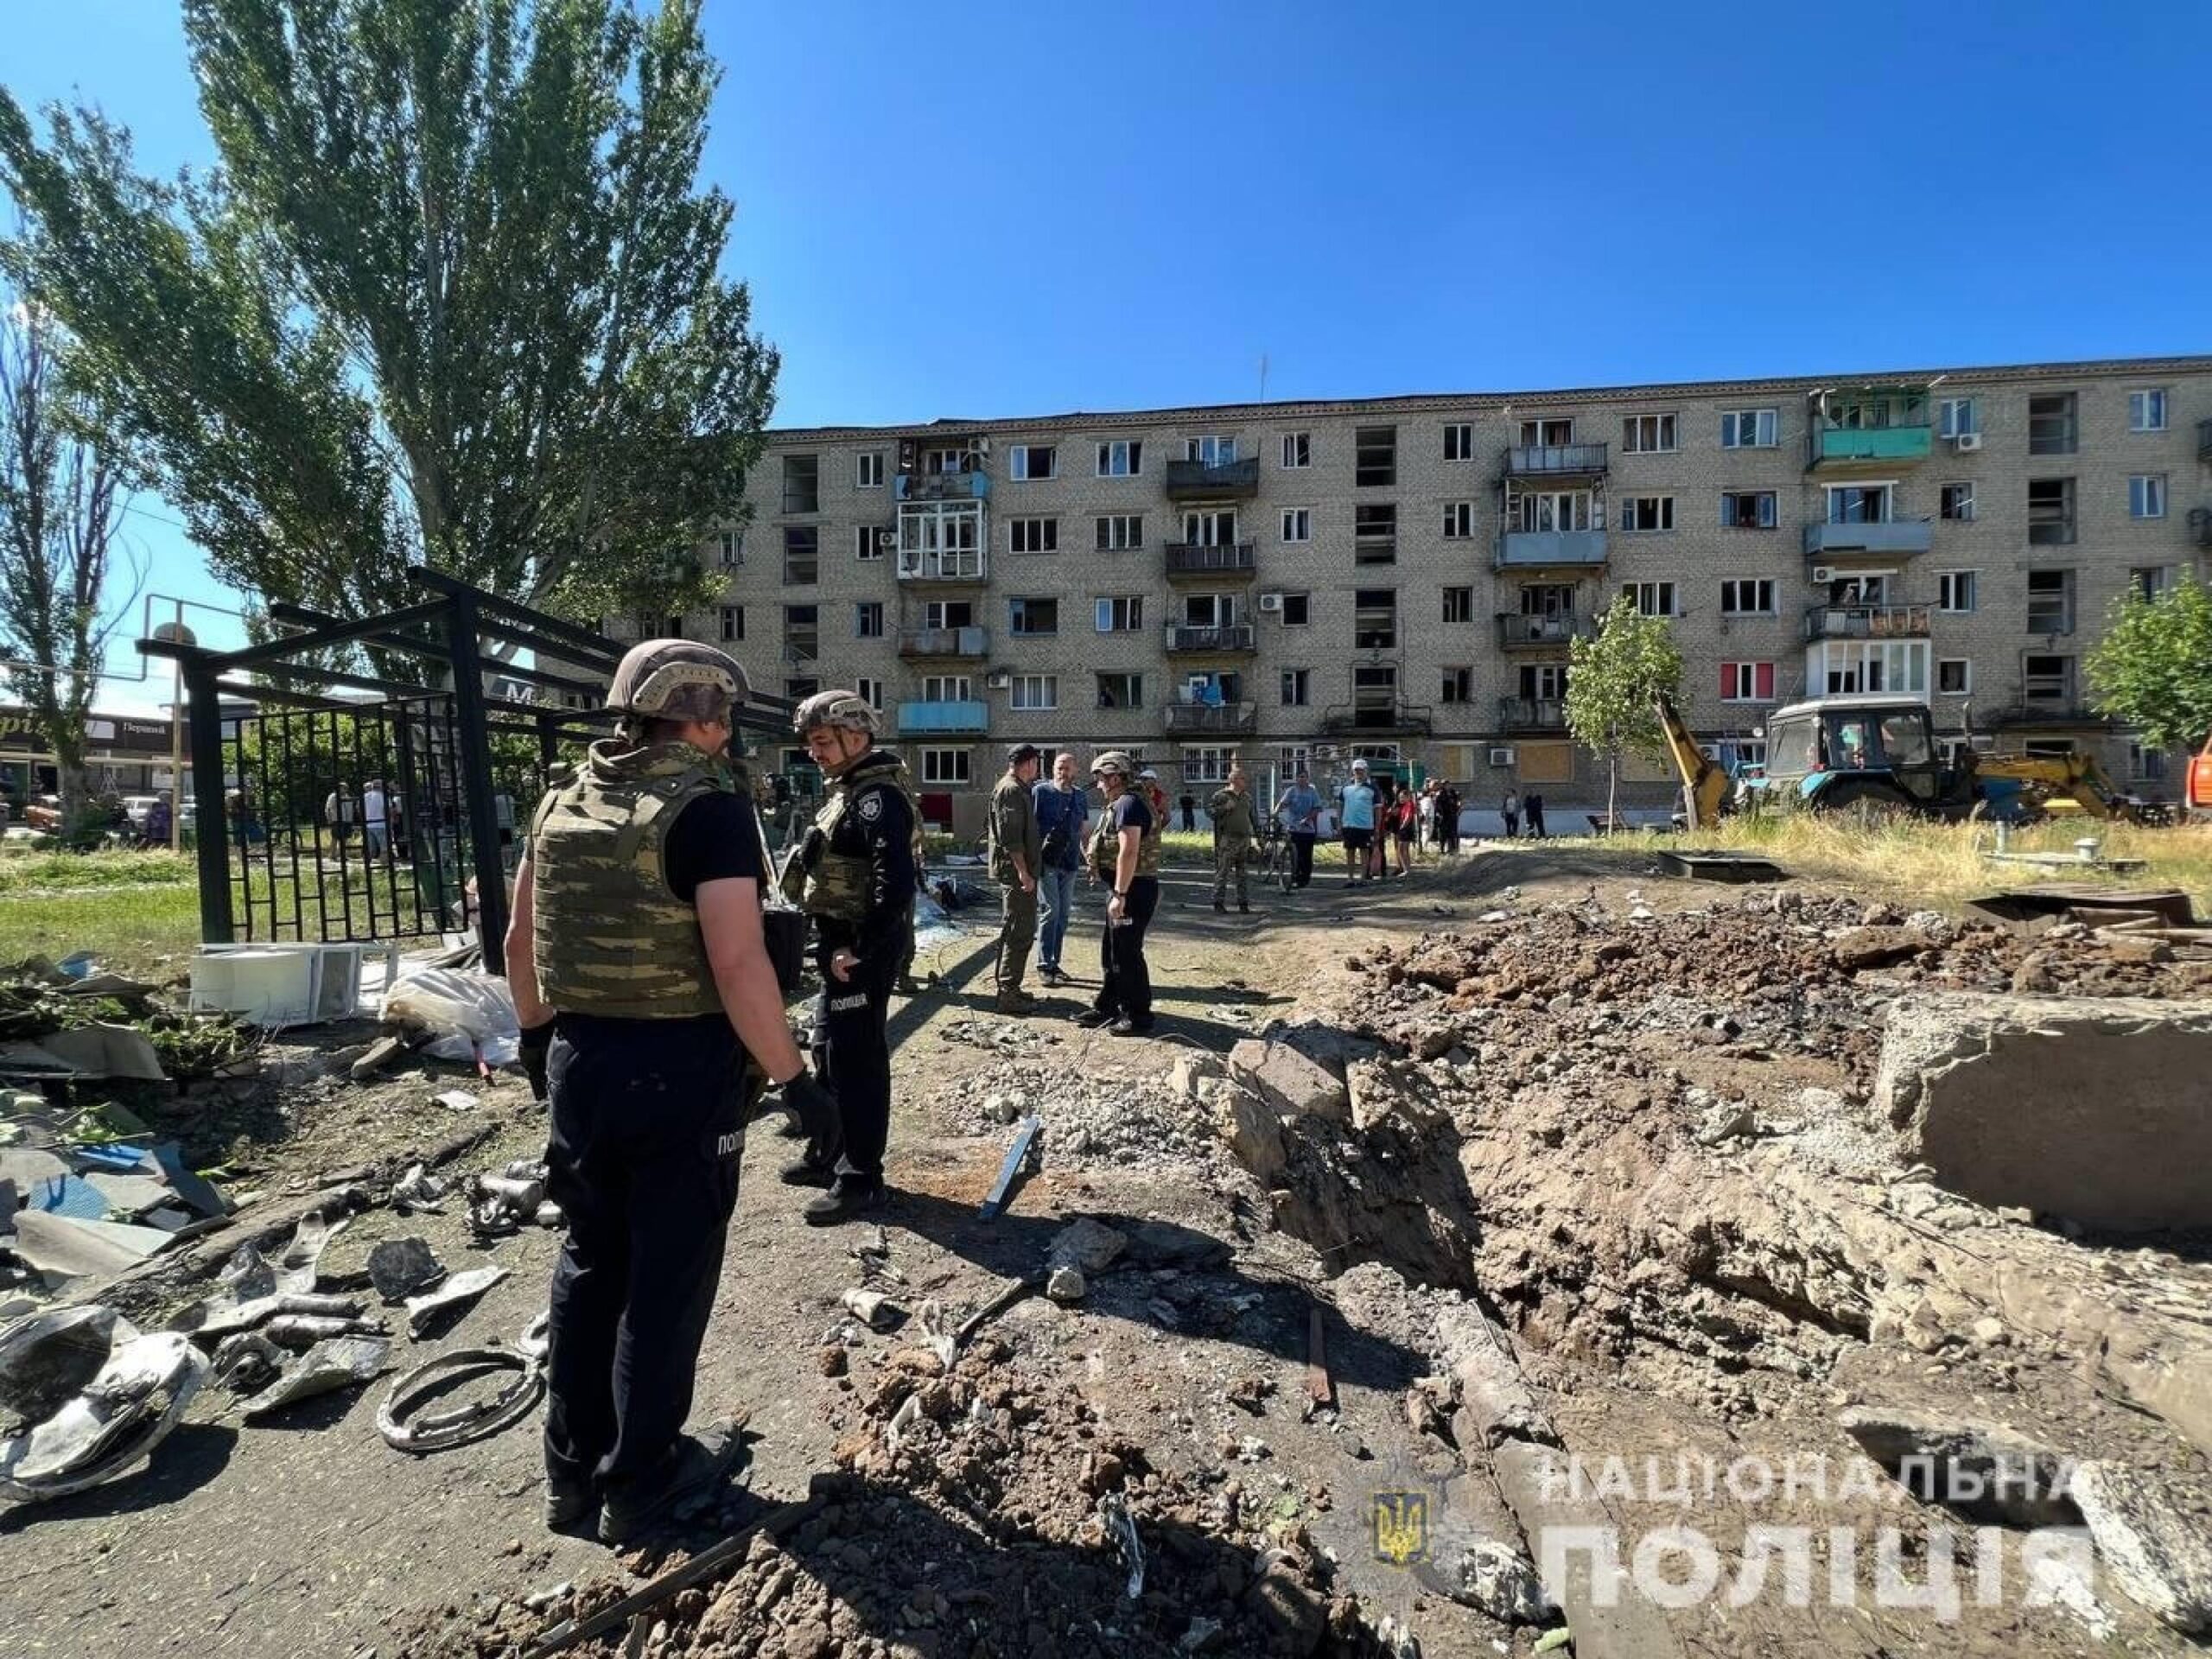 Severodonetsk non si arrende, colpito ospedale con croce rossa sul tetto